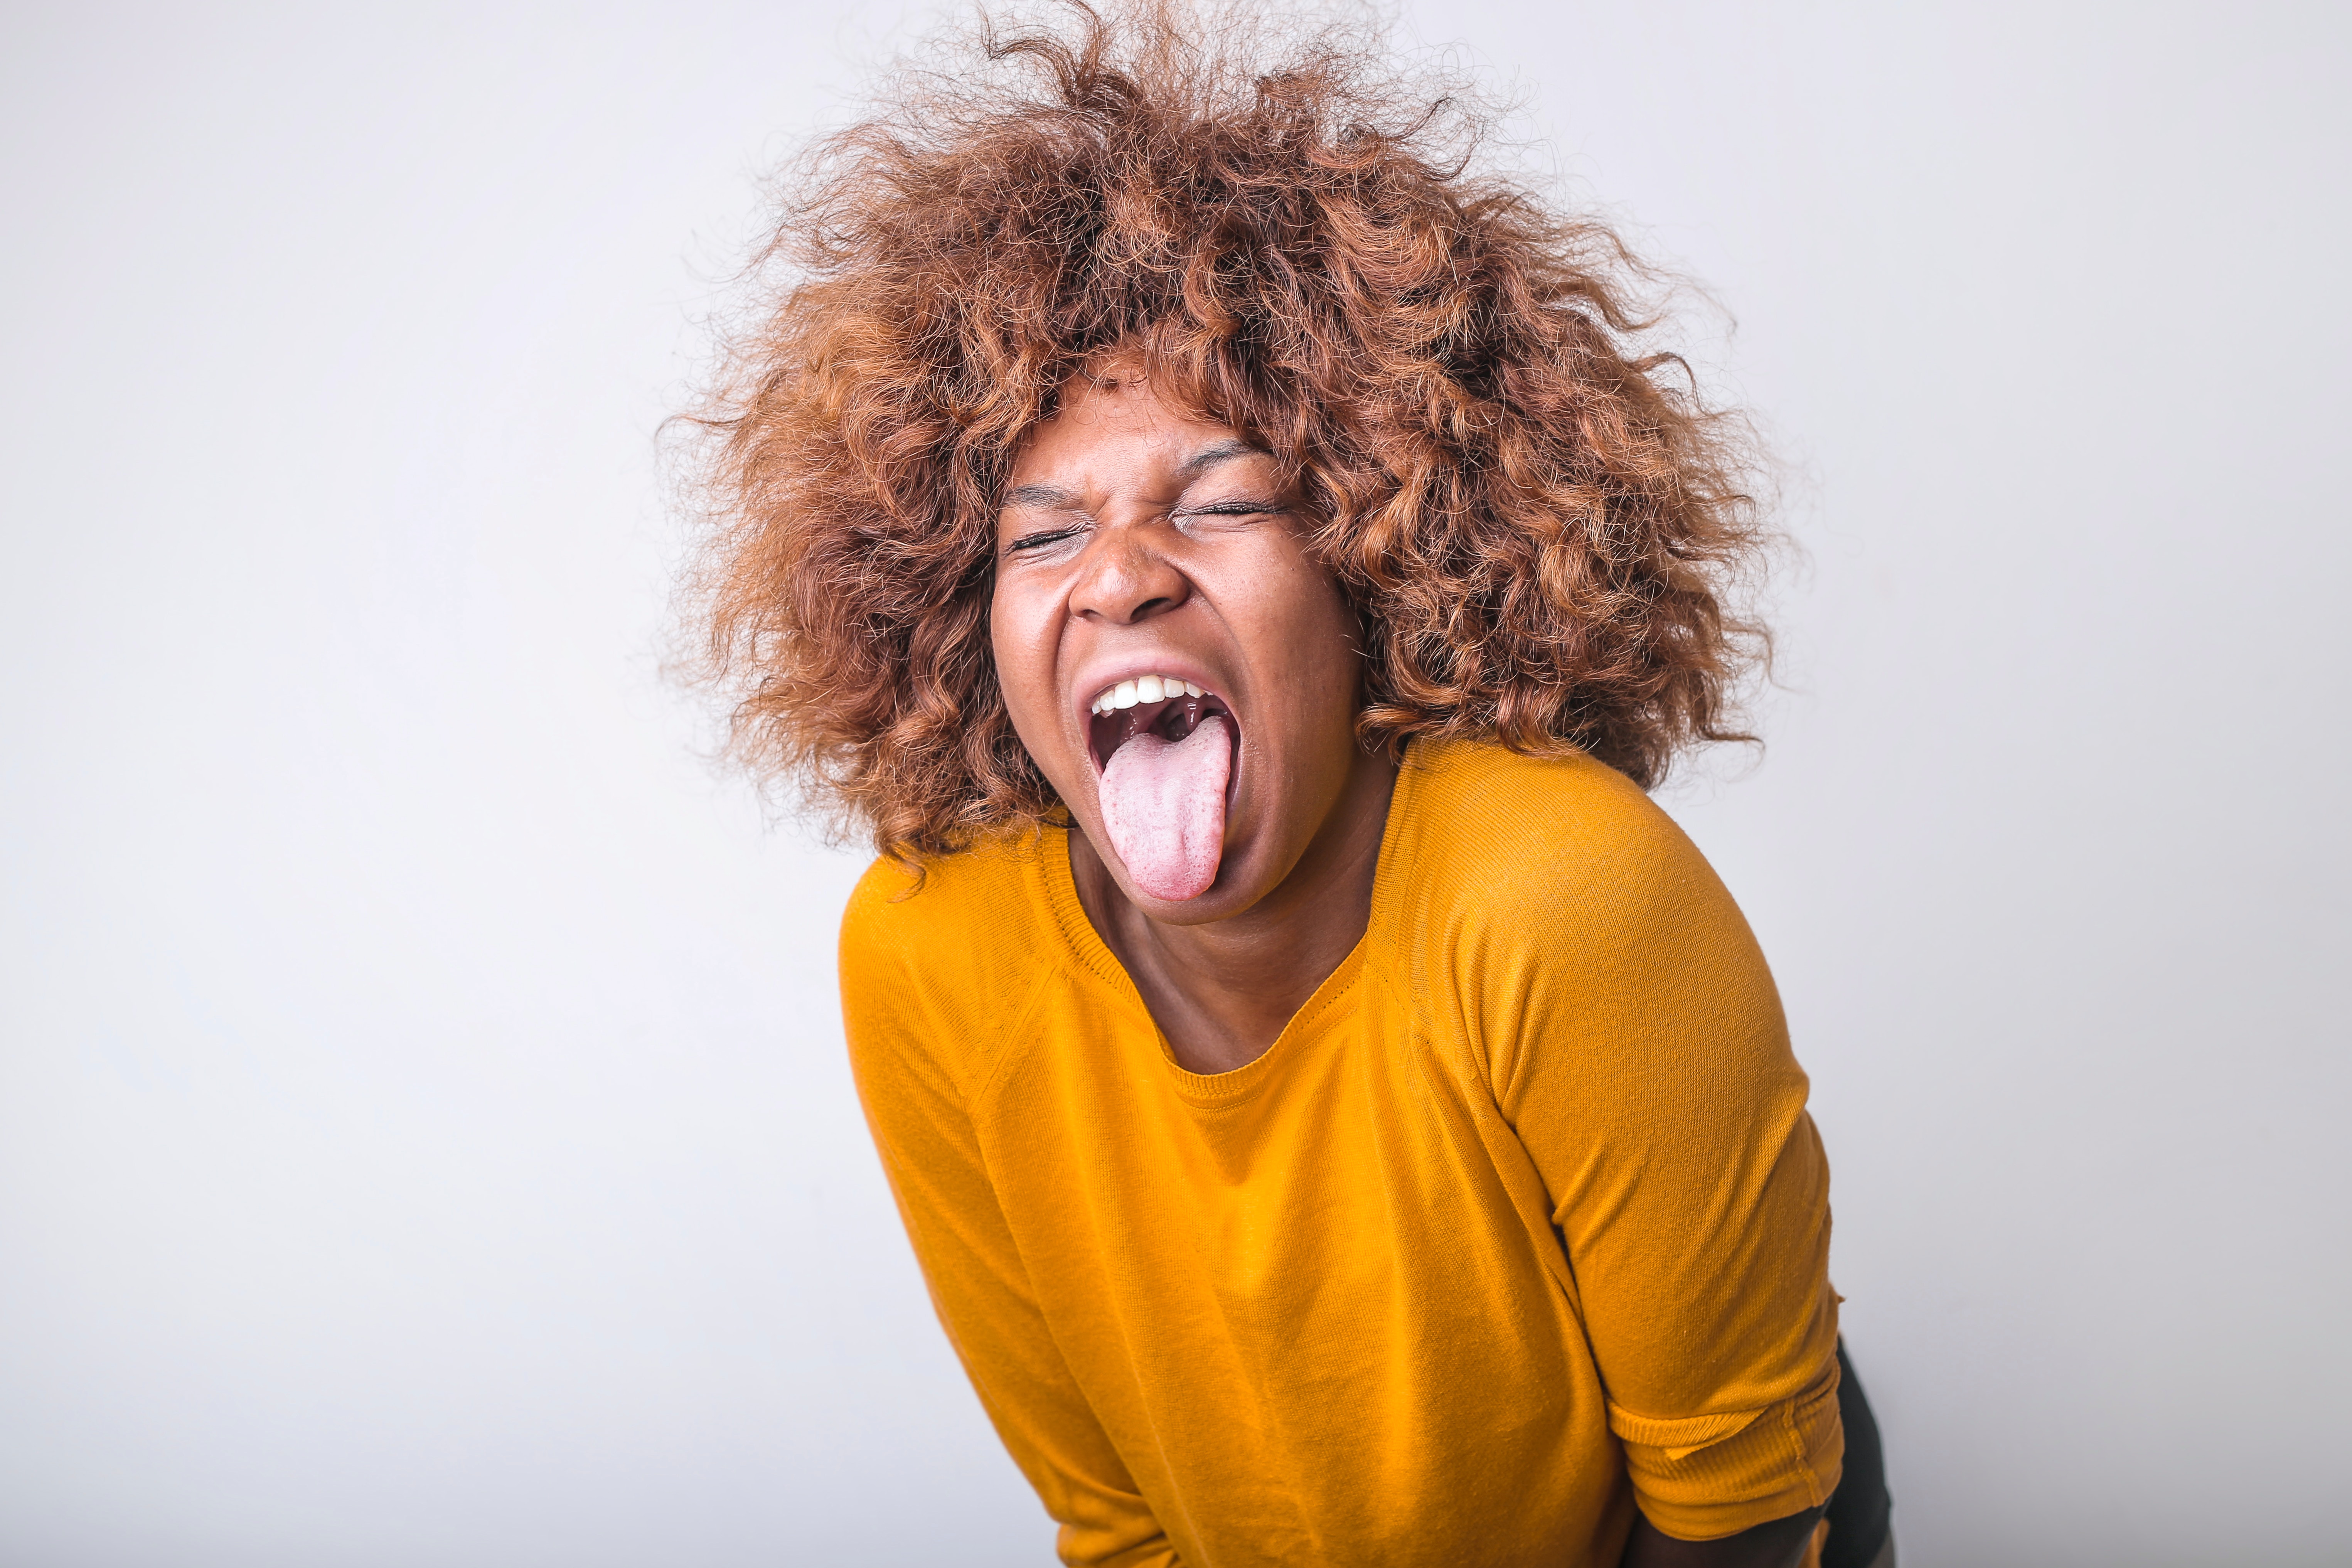 La imagen muestra una mujer que saca la lengua en señal de repugnancia o rechazo.